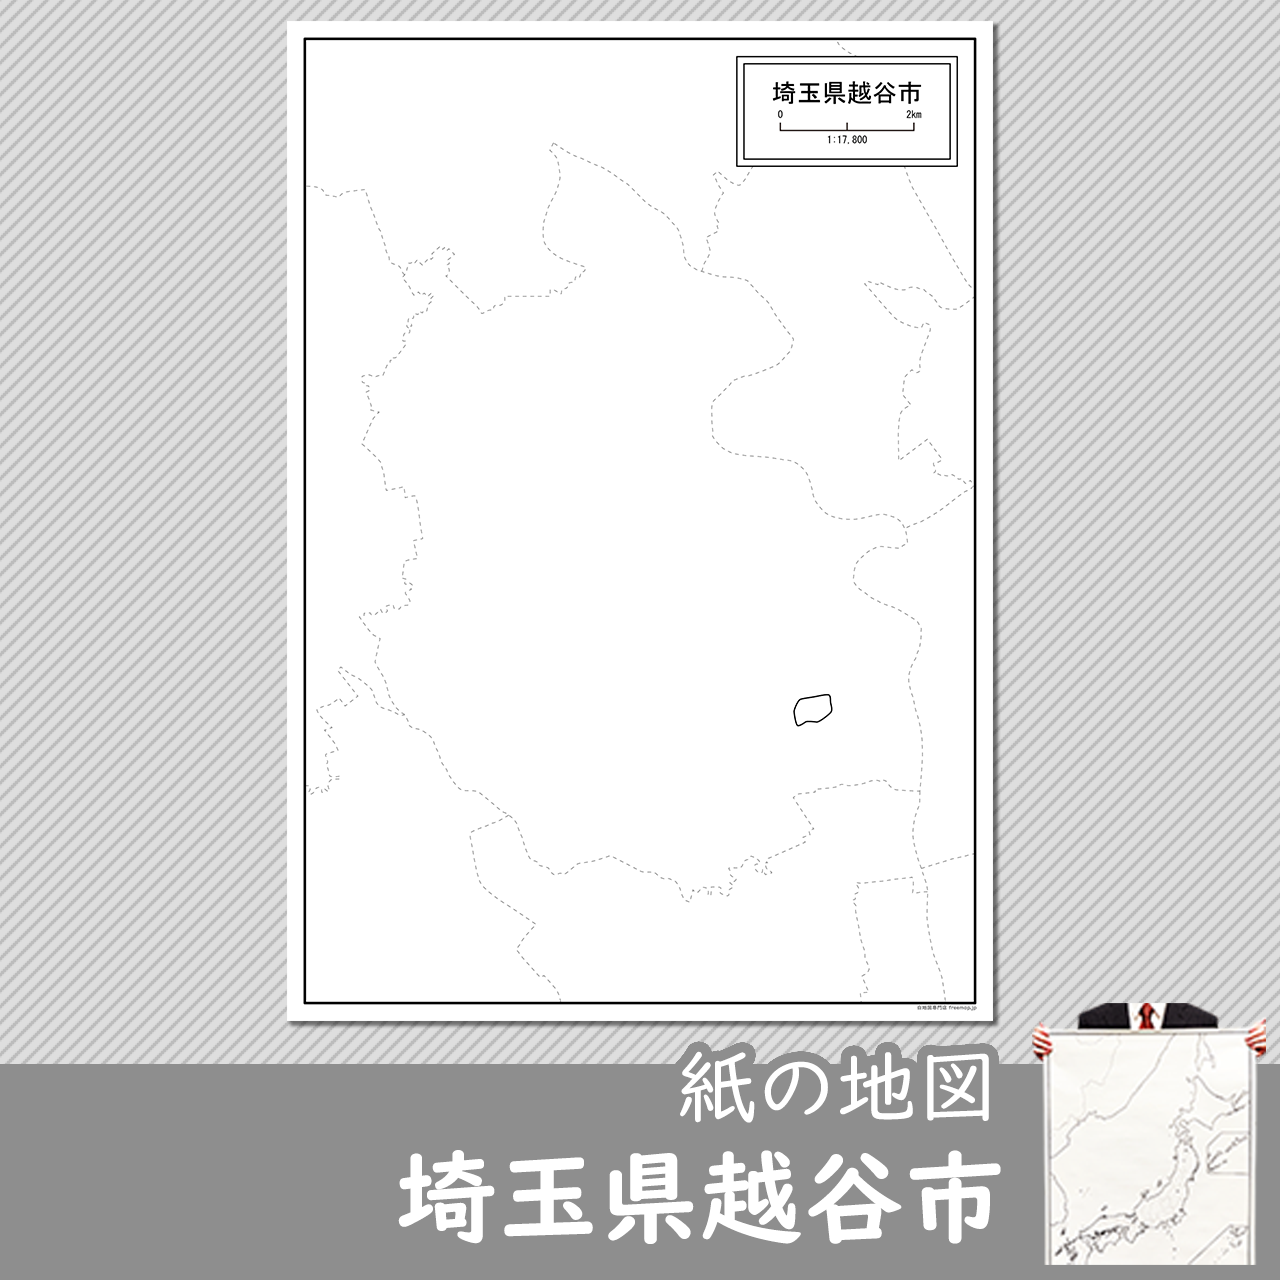 埼玉県越谷市の紙の白地図